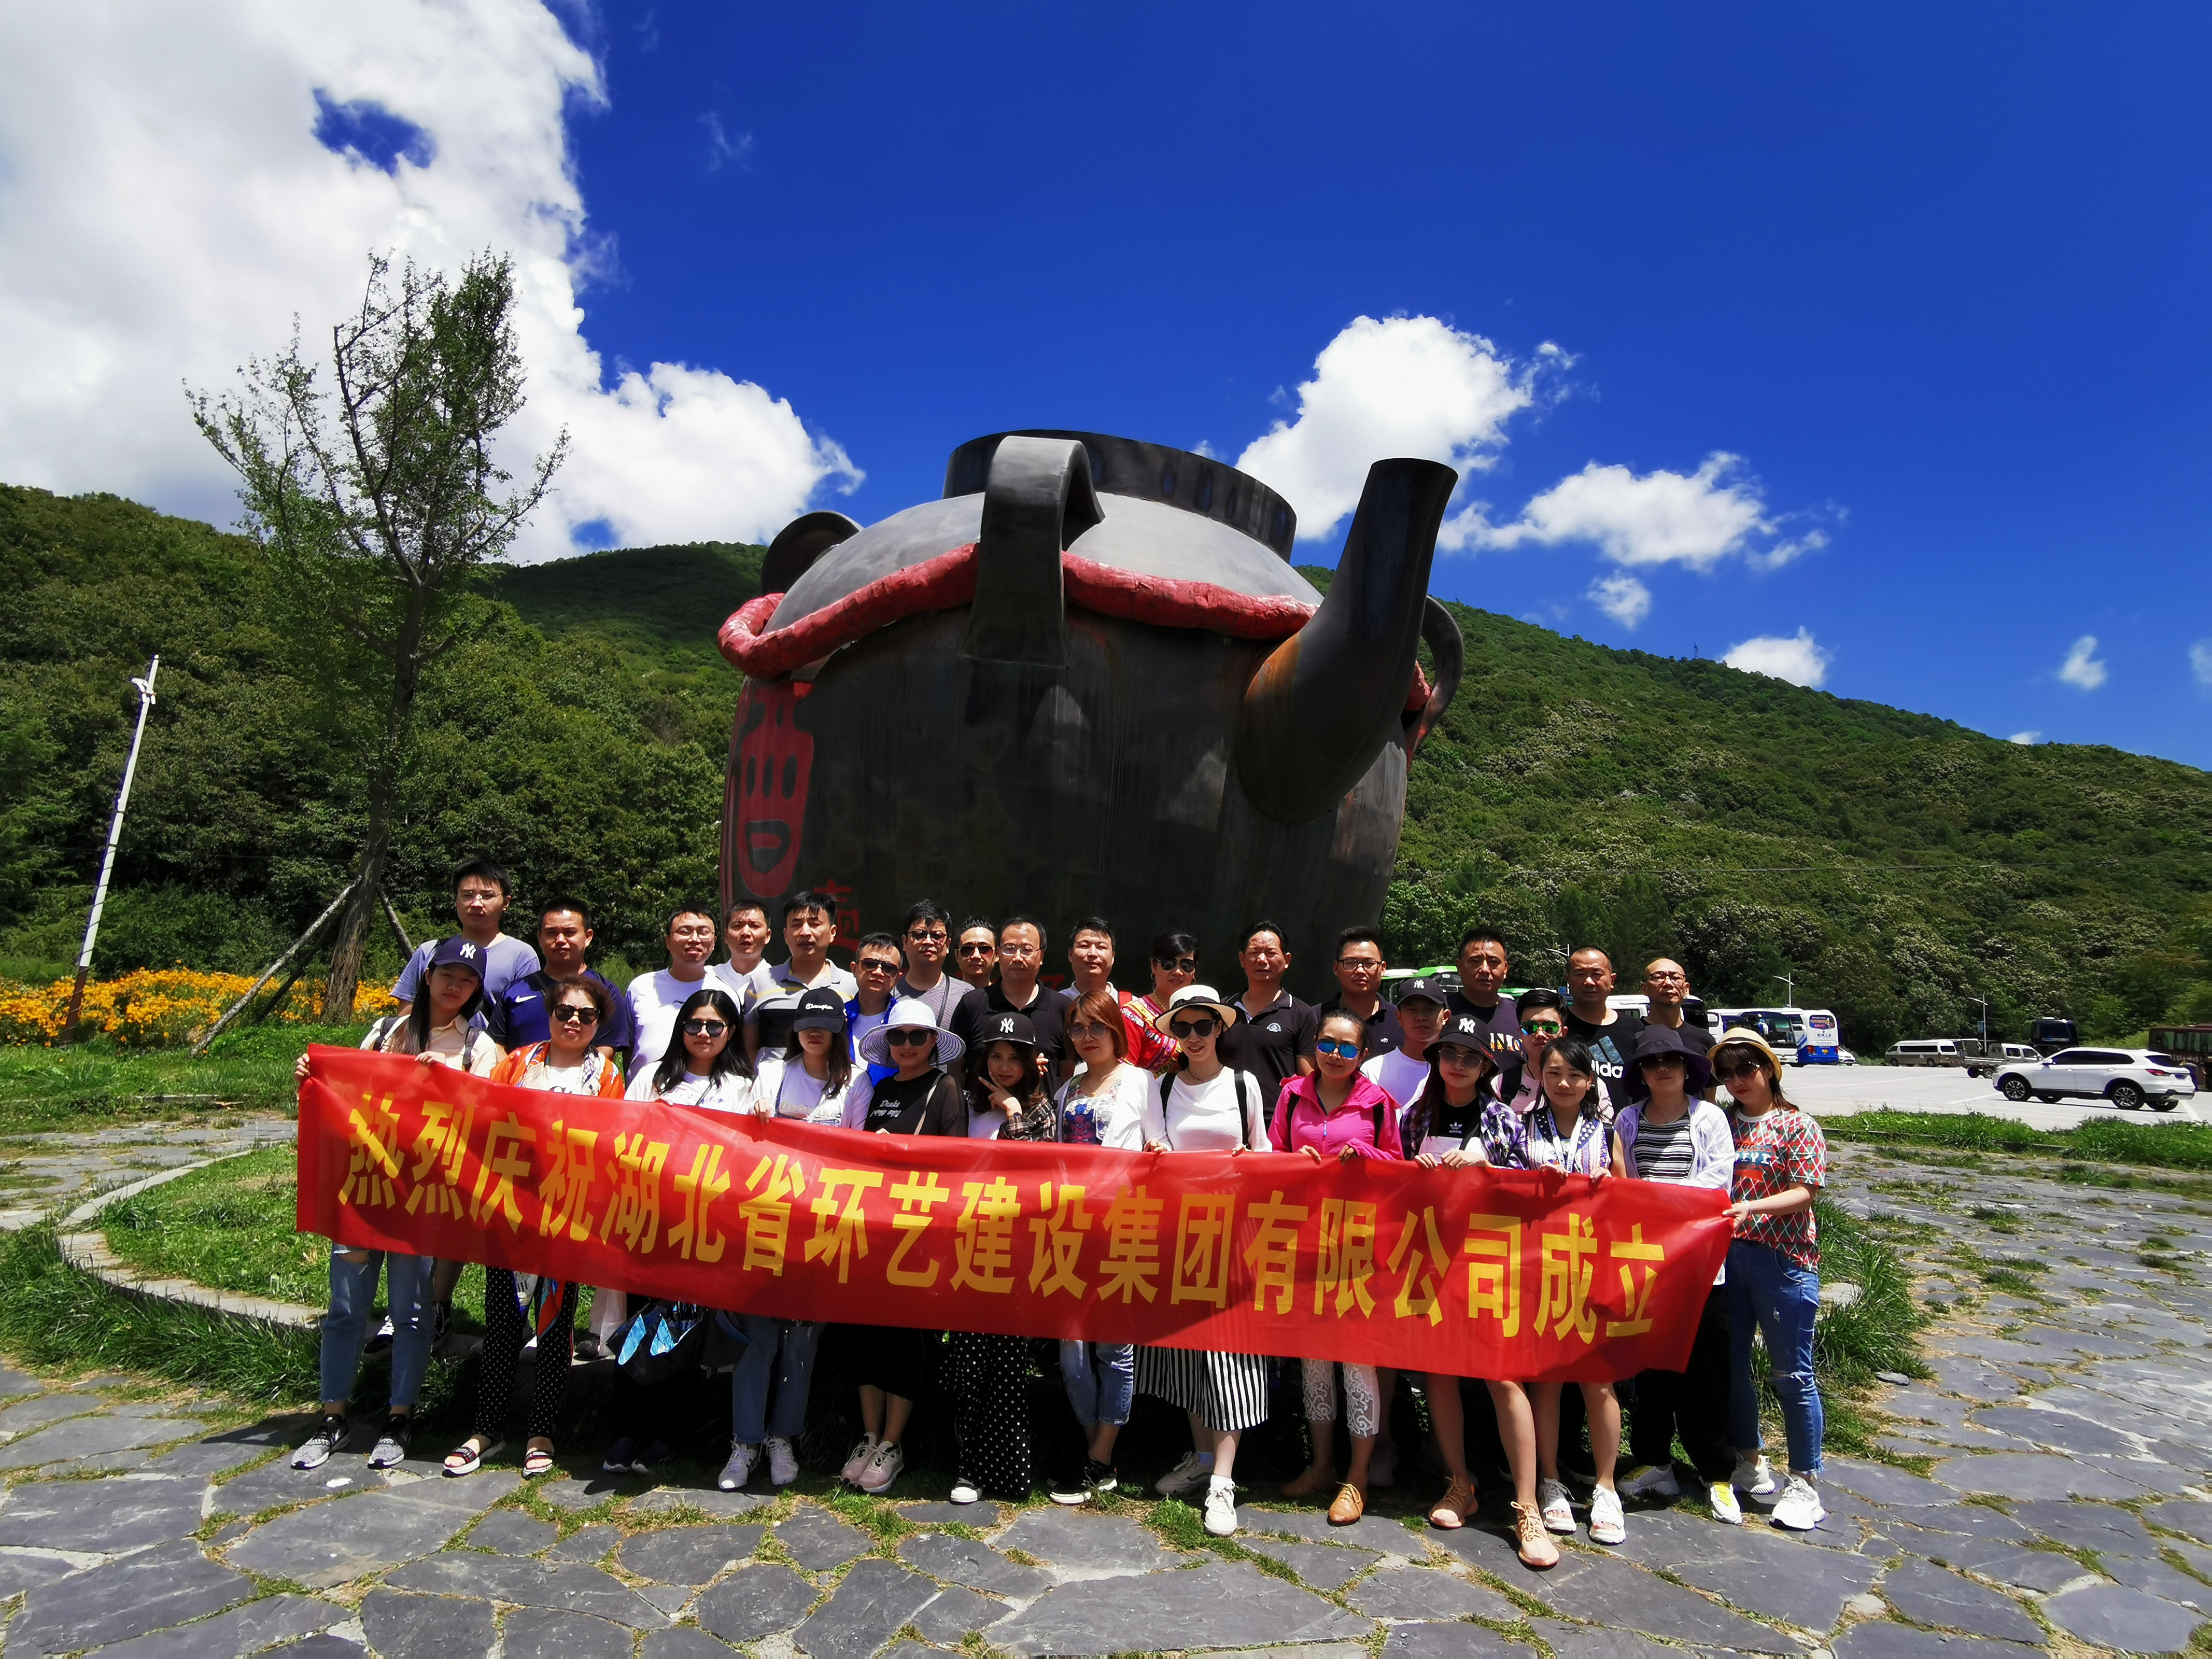 熱烈慶祝湖北省環藝建設集團年中會議及年中團建活動圓滿舉辦